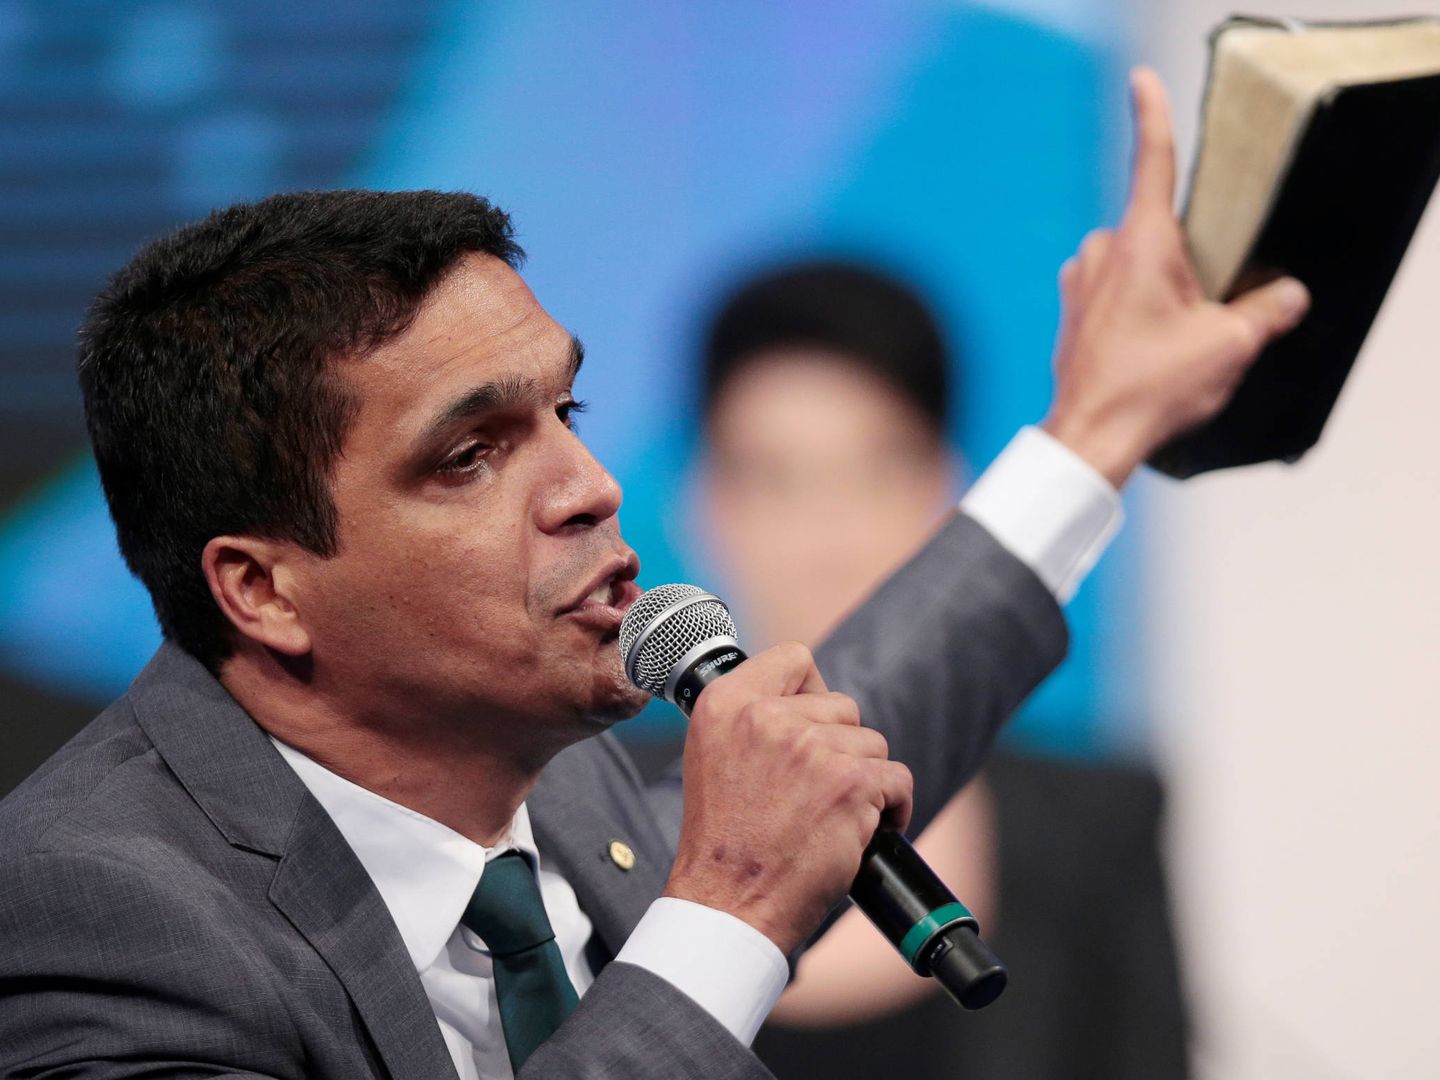 El candidato presidencial Cabo Daciolo sostiene una biblia durante un debate electoral en televisión. (Reuters) 